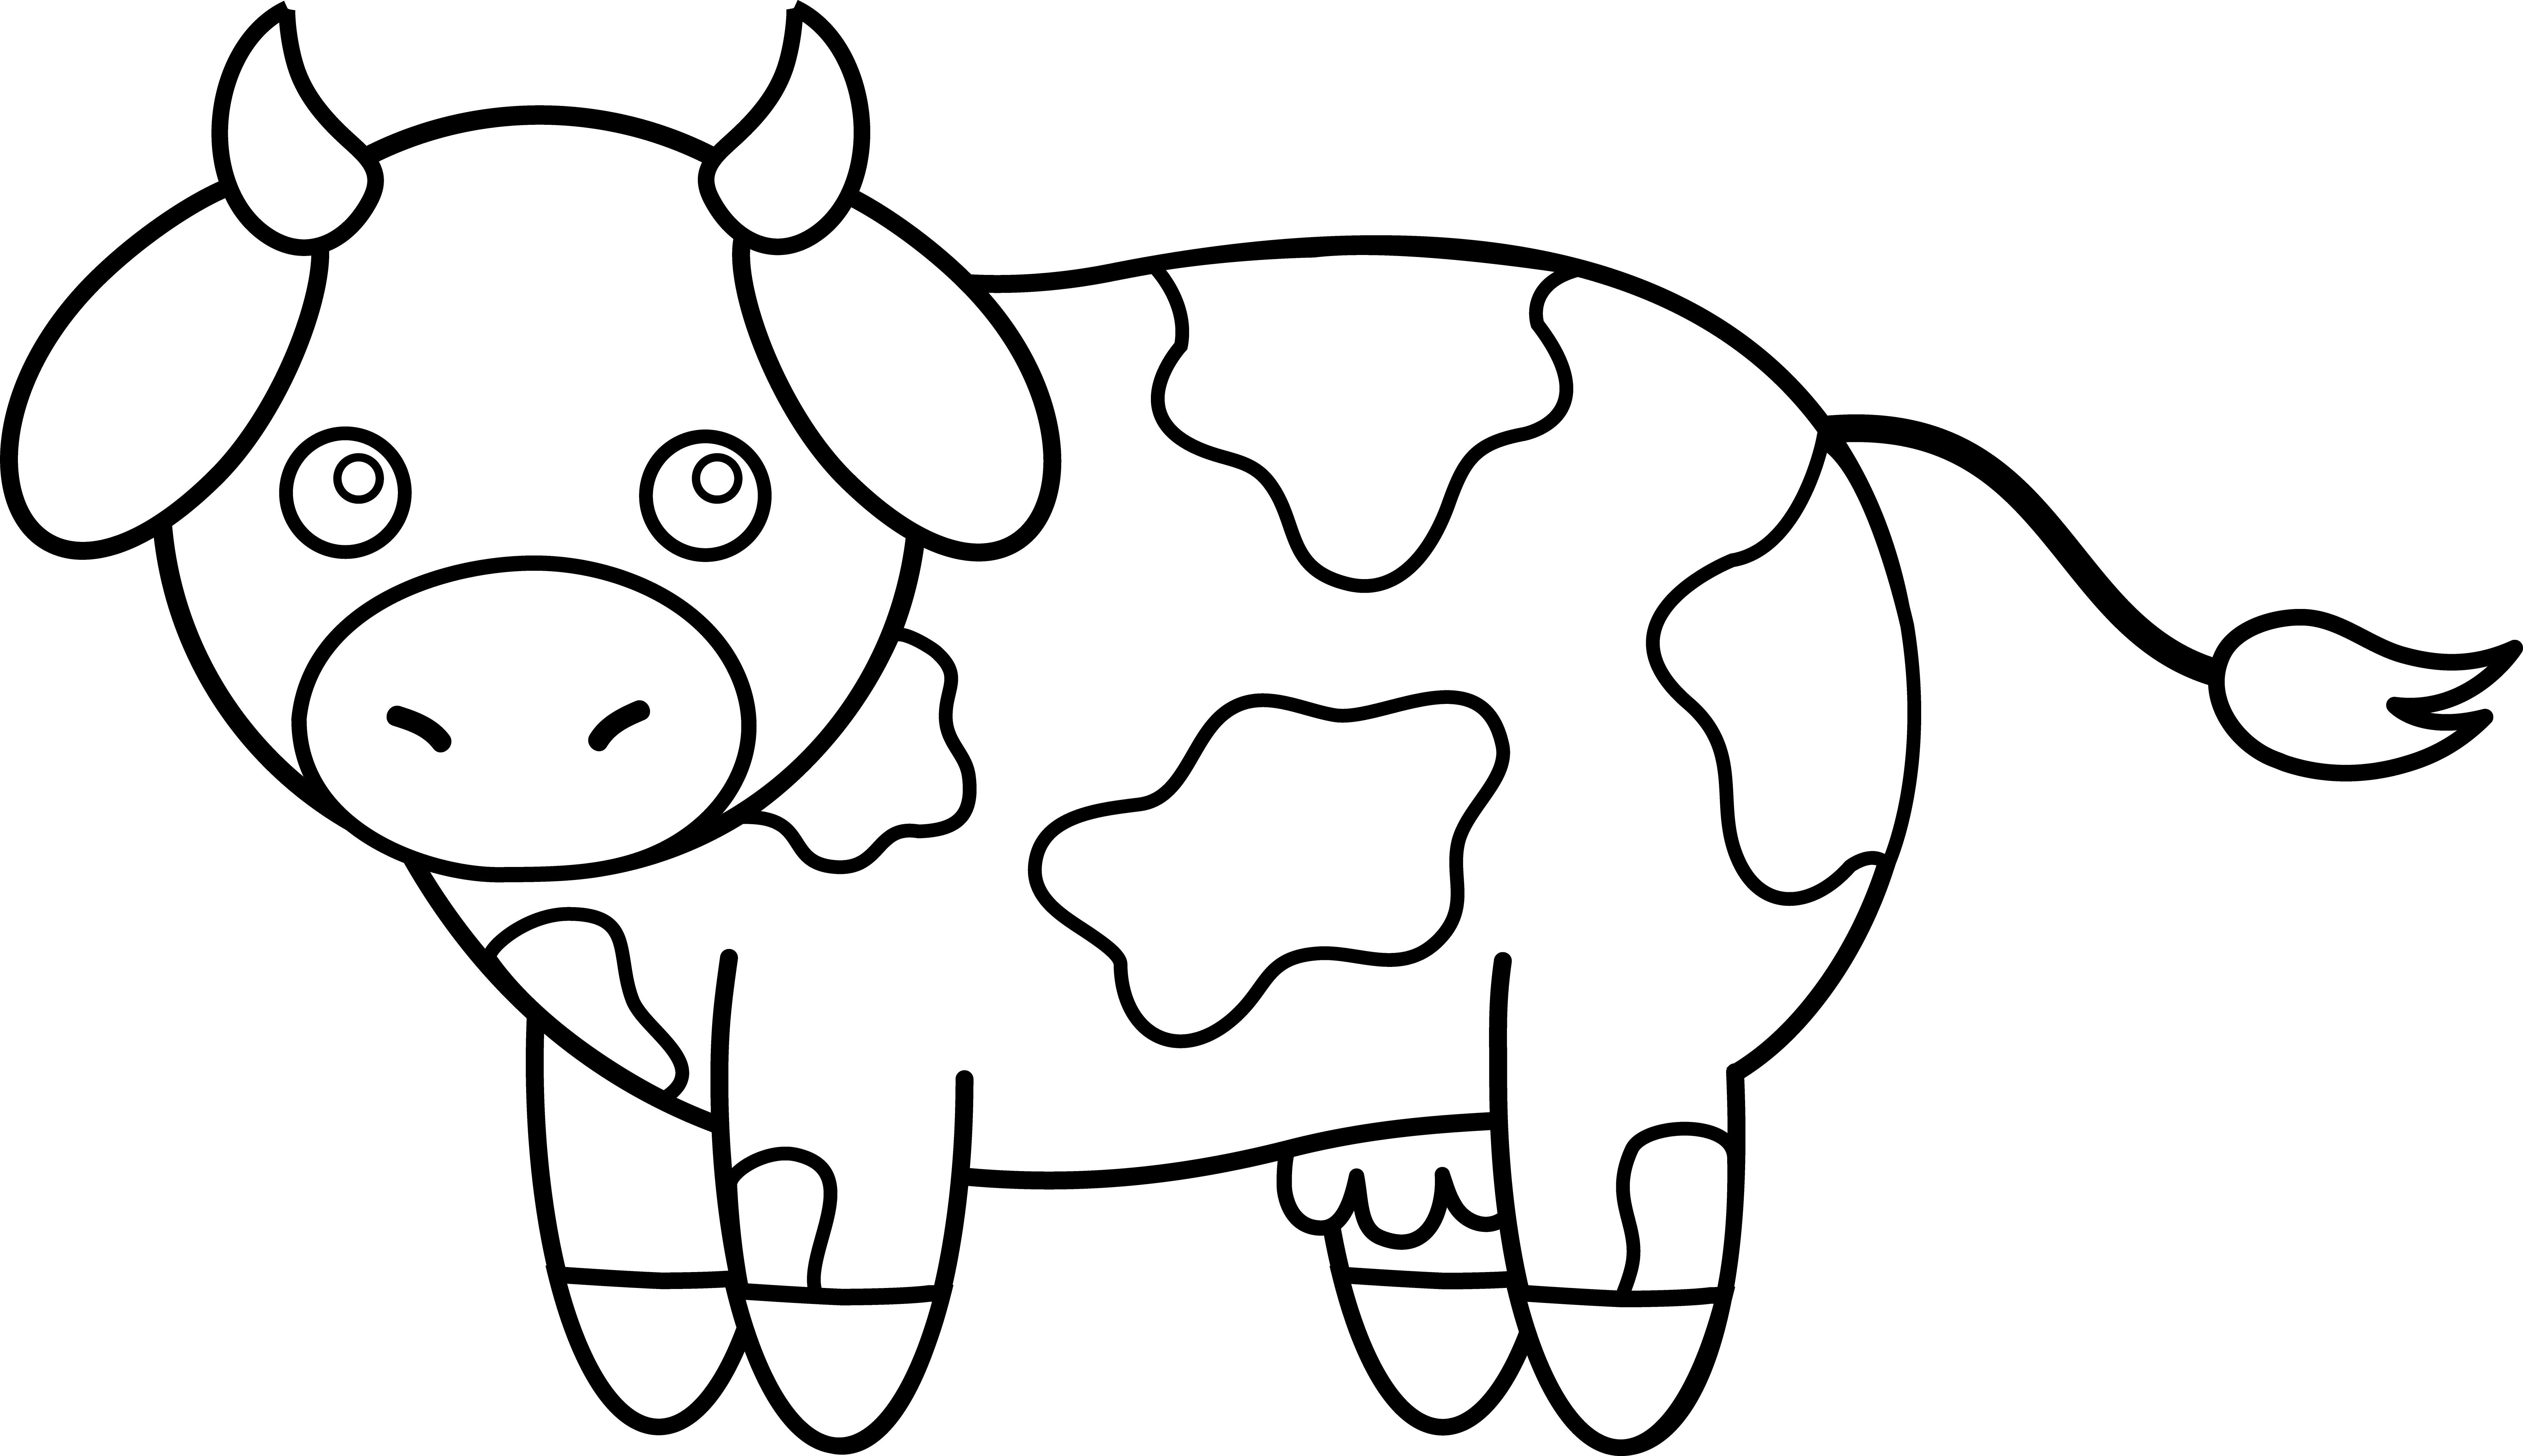 Раскраска корова. Корова раскраска для детей. Корова раскраска для малышей. Корова картинка для детей раскраска. Распечатать коровку раскраску